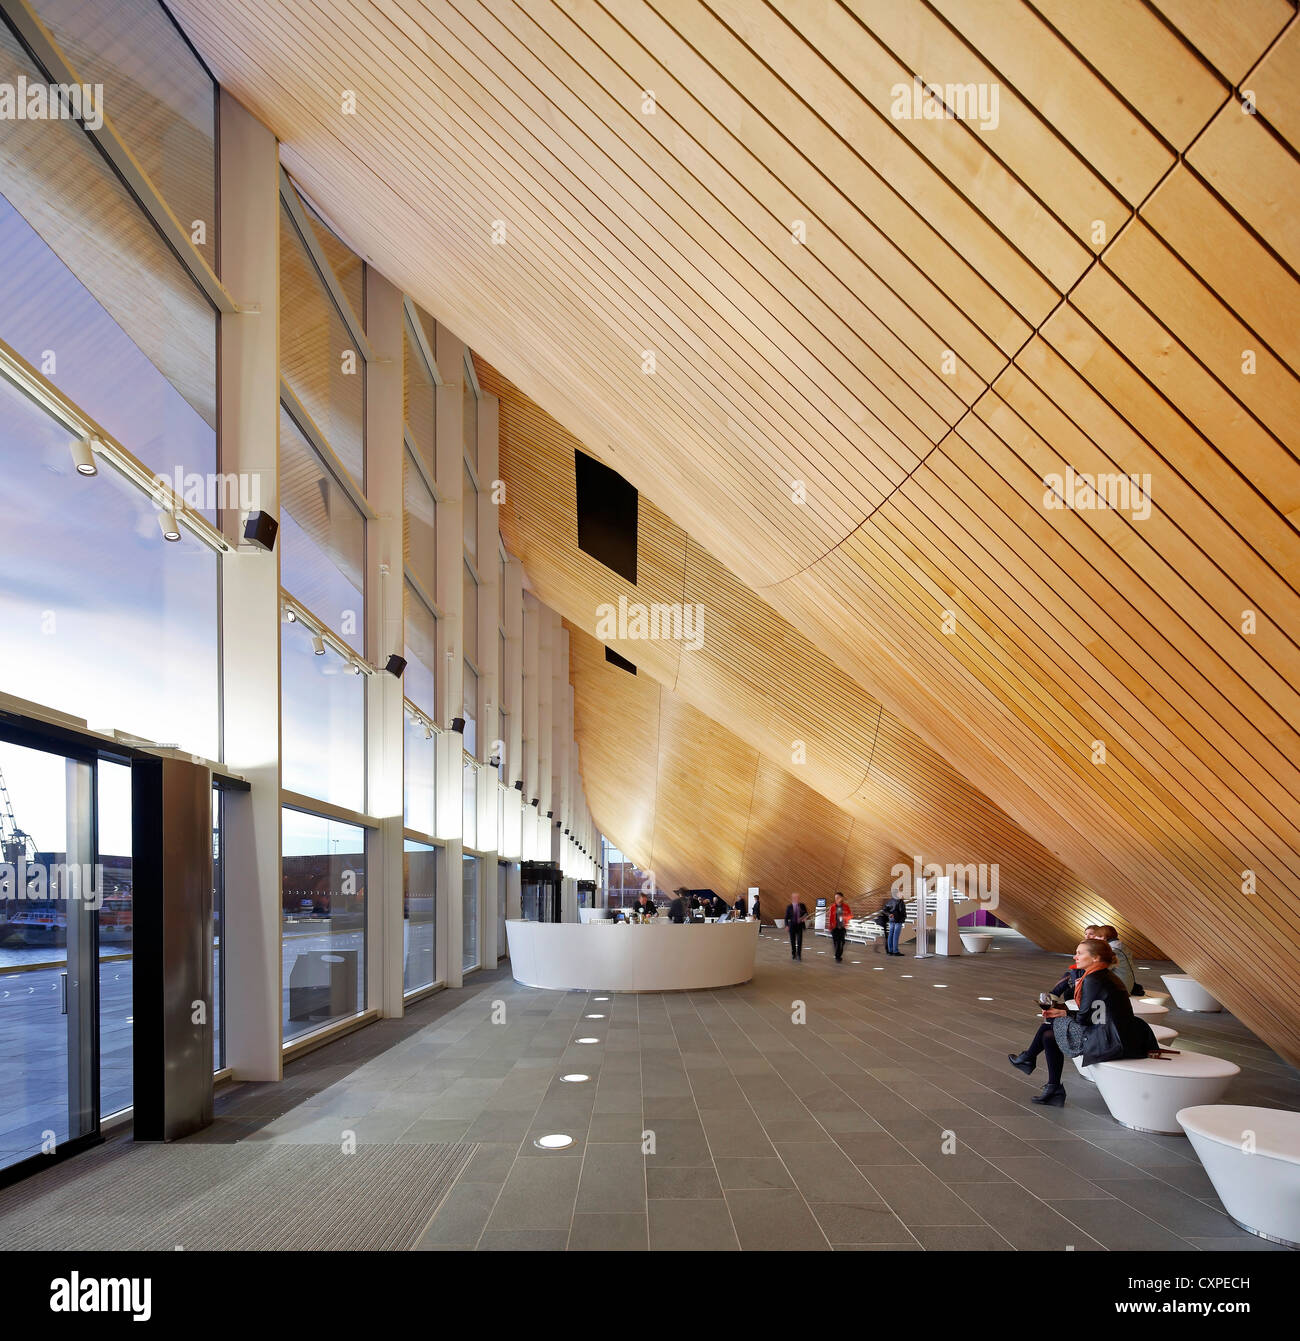 Kilden Performing Arts Centre, Kristiansand, Norvège. Architecte : ALA Architects, 2011. Vue de l'intérieur de l'hall avec les gens de soleils Banque D'Images